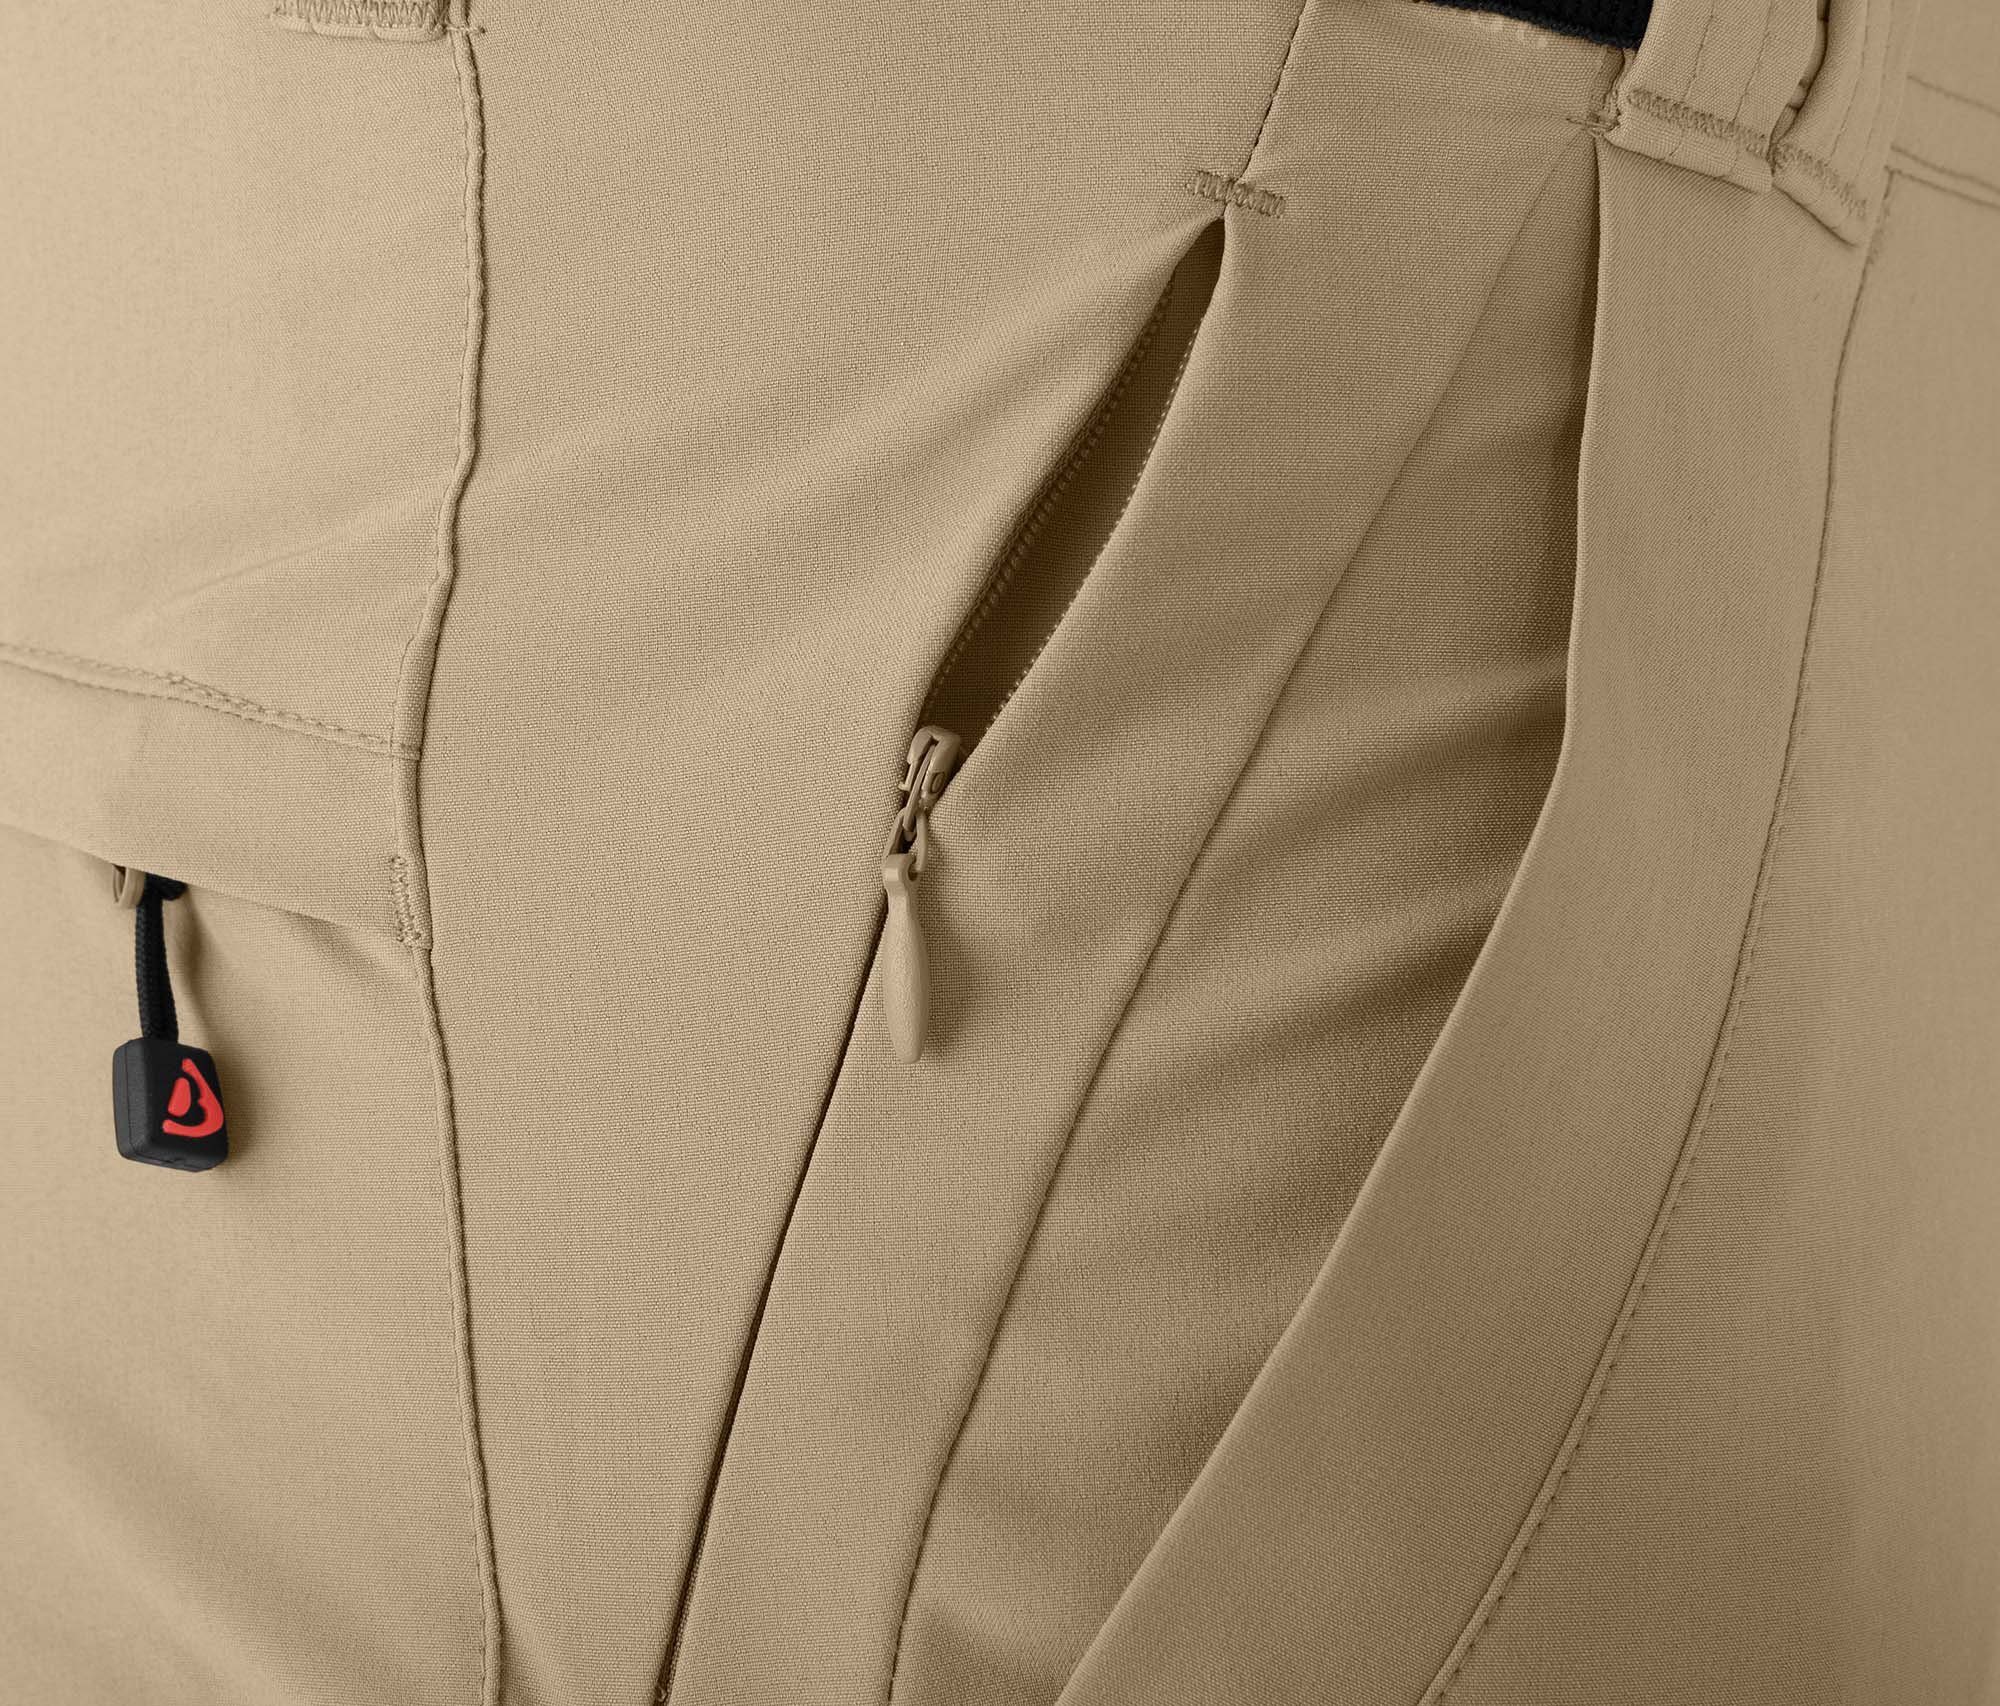 Bergson Zip-off-Hose FROSLEV Bermuda Normalgrößen, beige elastisch, Zipp-Off 7 Herren Taschen, recycelt, Wanderhose